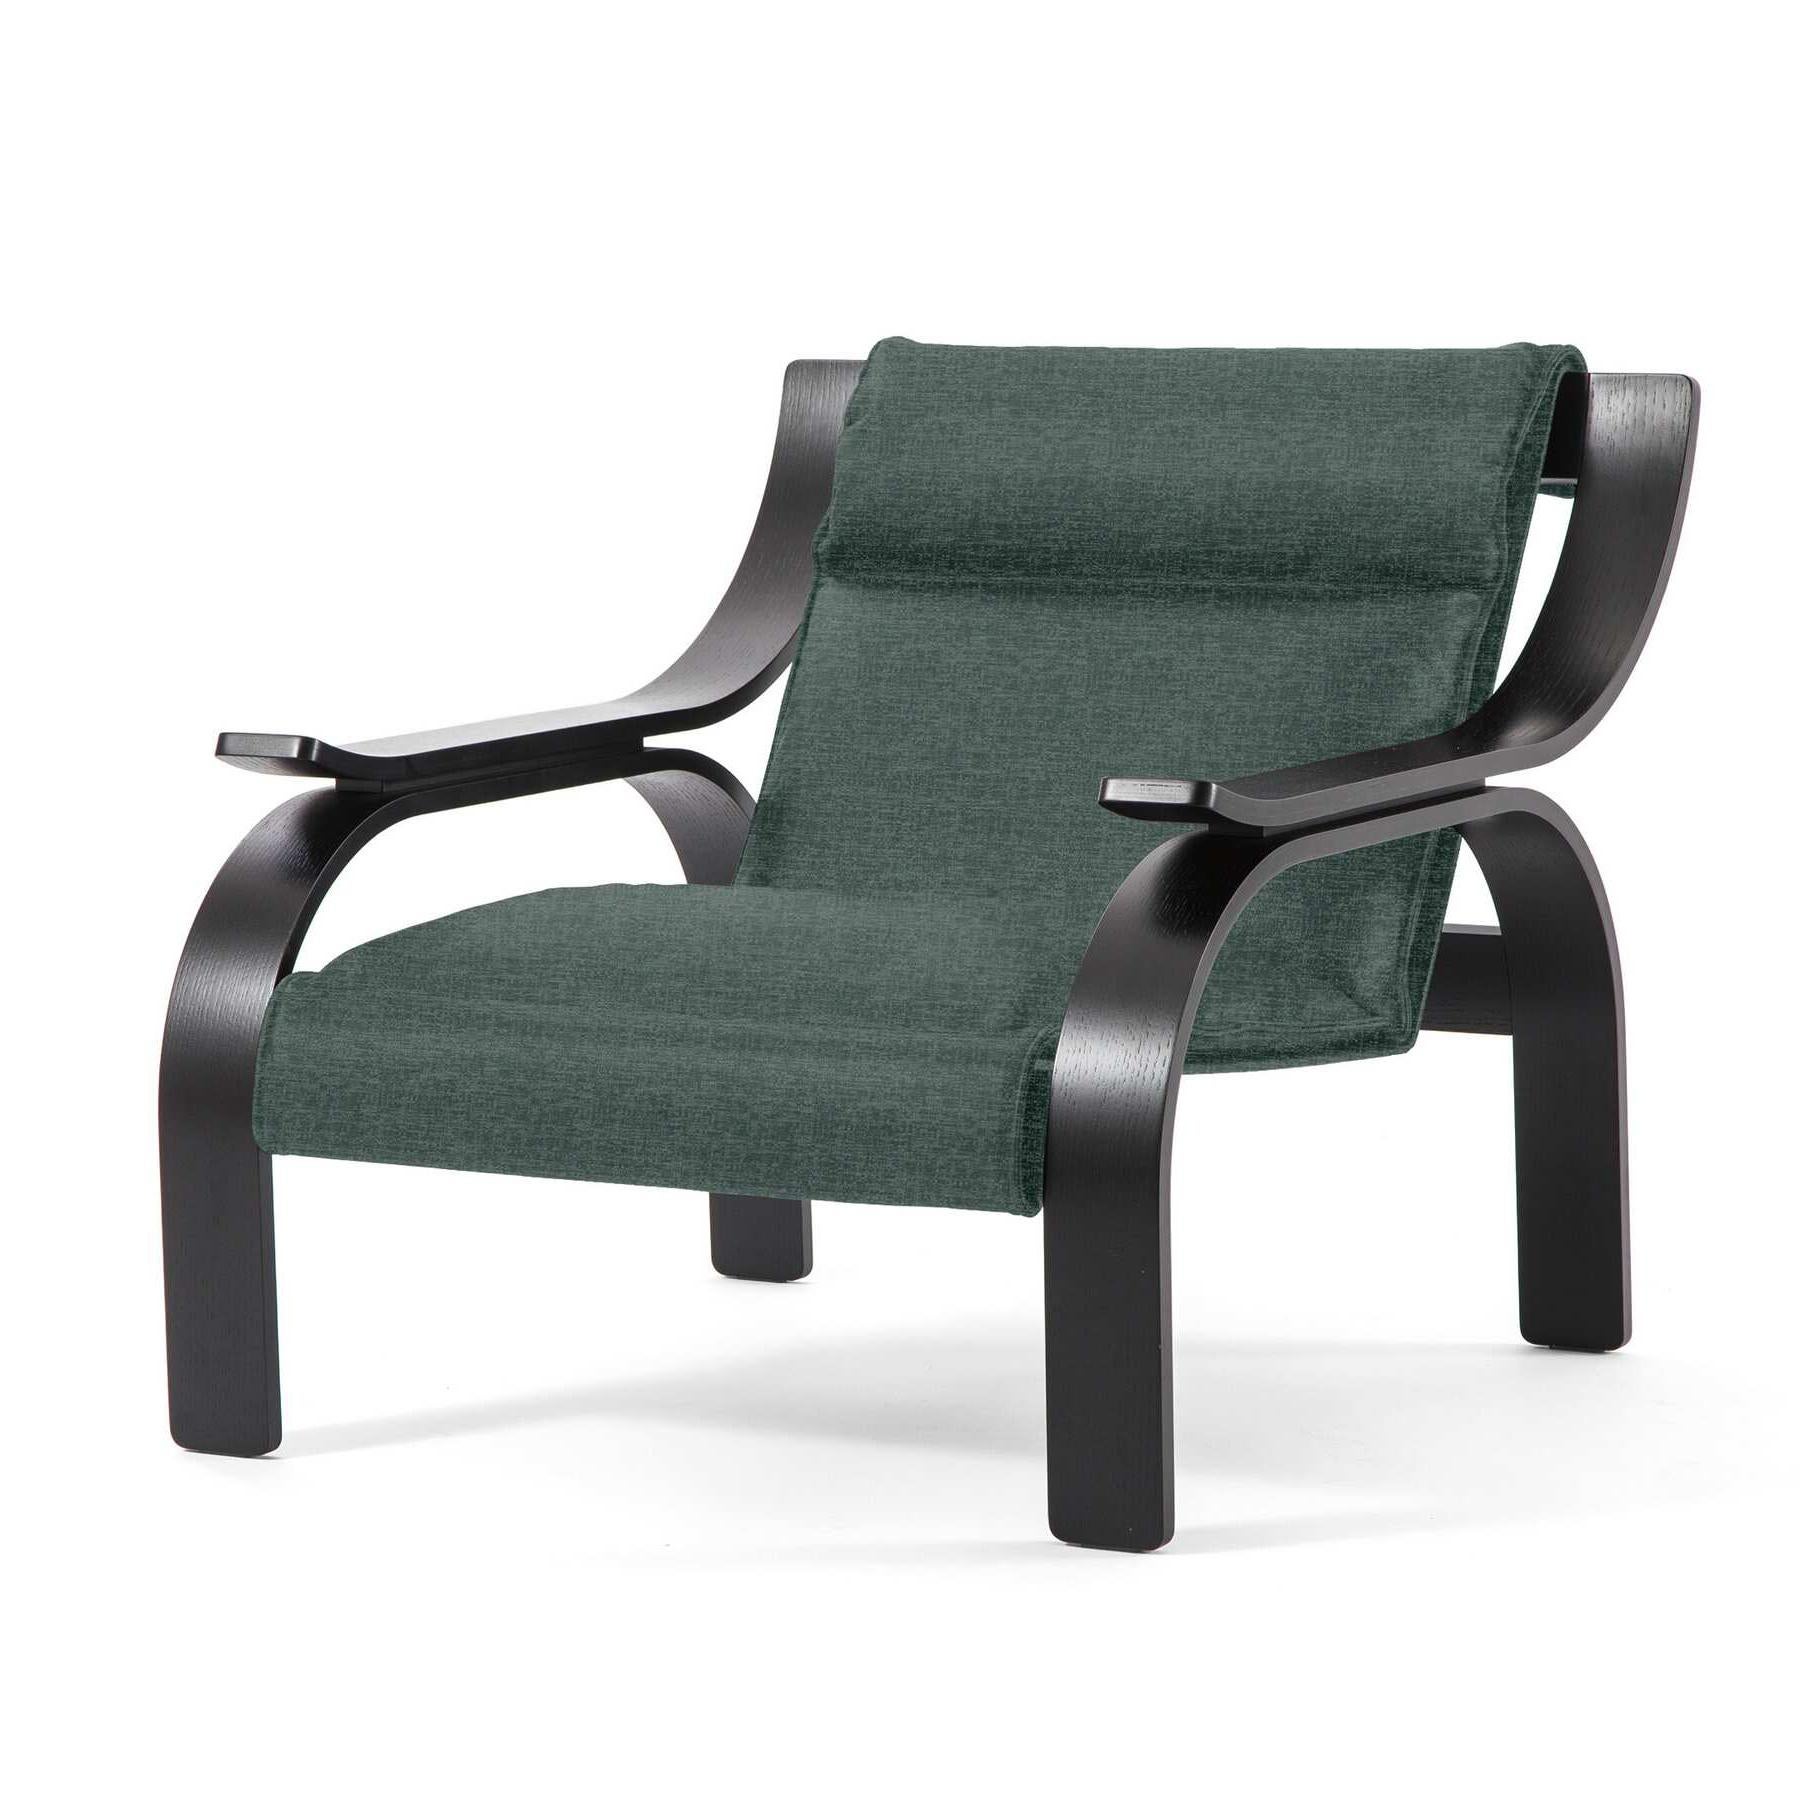 Fauteuil Woodline conçu par Marco Zanuso en 1964, relancé en 2015.

Tissu vert et bois teinté noir.

Fabriqué par Cassina en Italie.

Un fauteuil au design saisissant et rigoureux, fruit des recherches de Marco Zanuso sur l'ancrage d'un siège sur